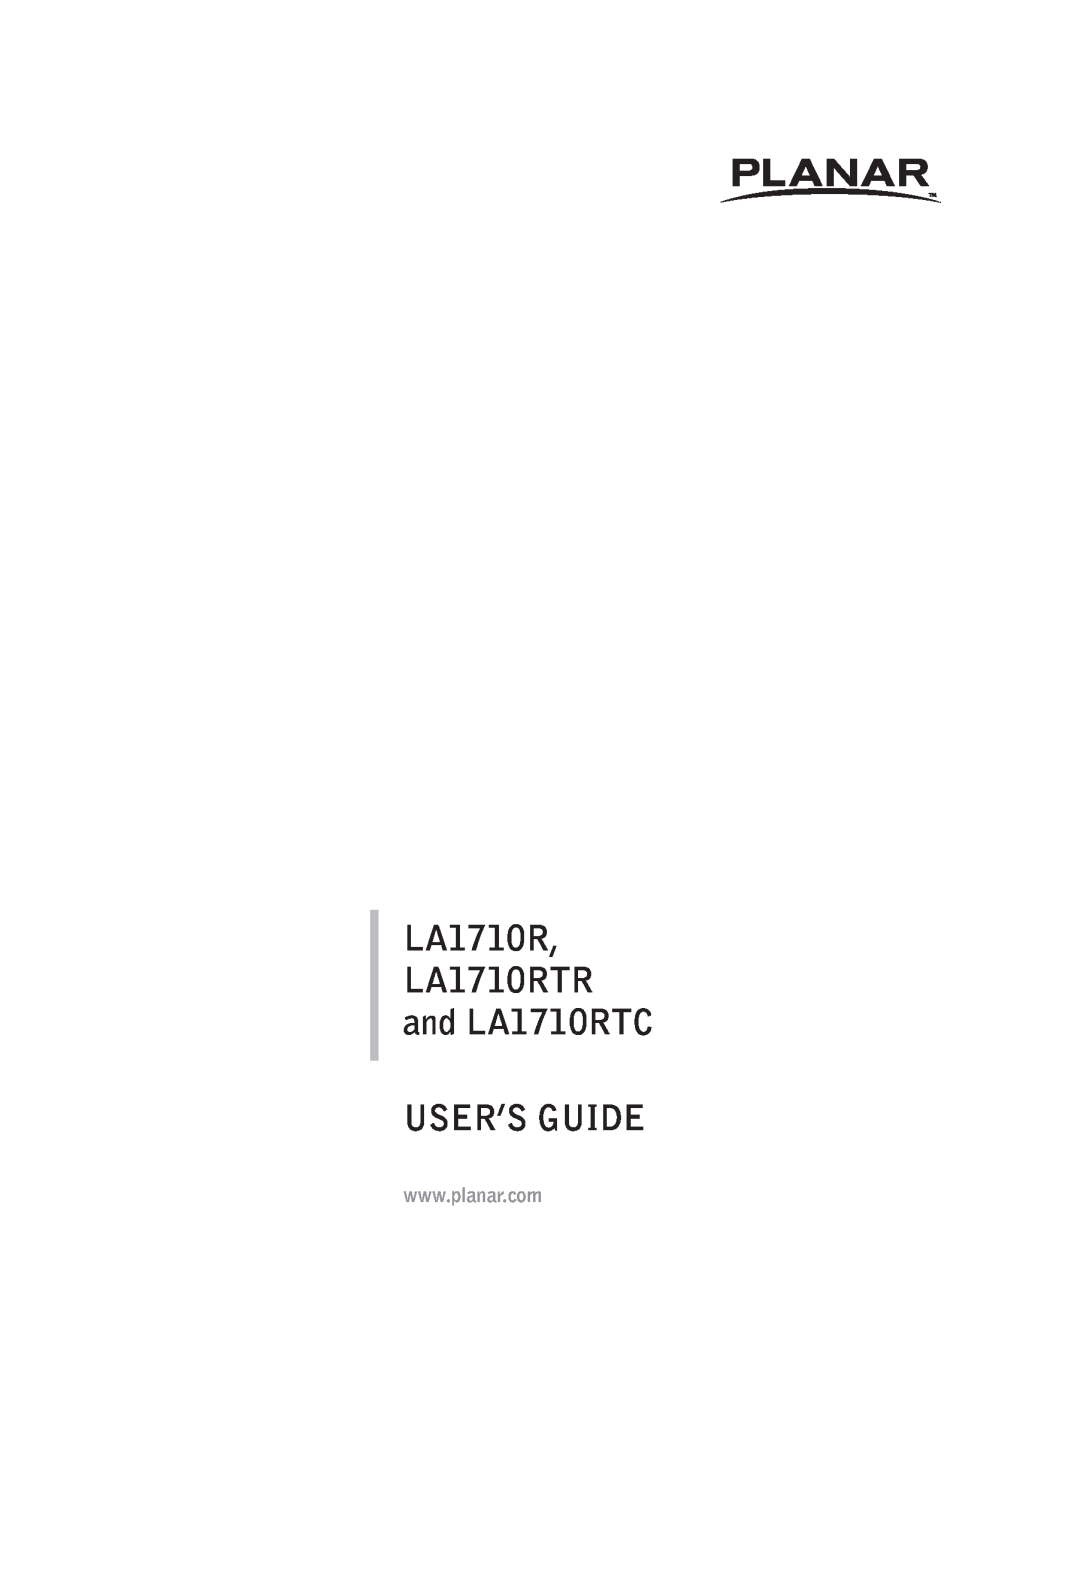 Planar manual User’S Guide, LA1710RTR and LA1710RTC 